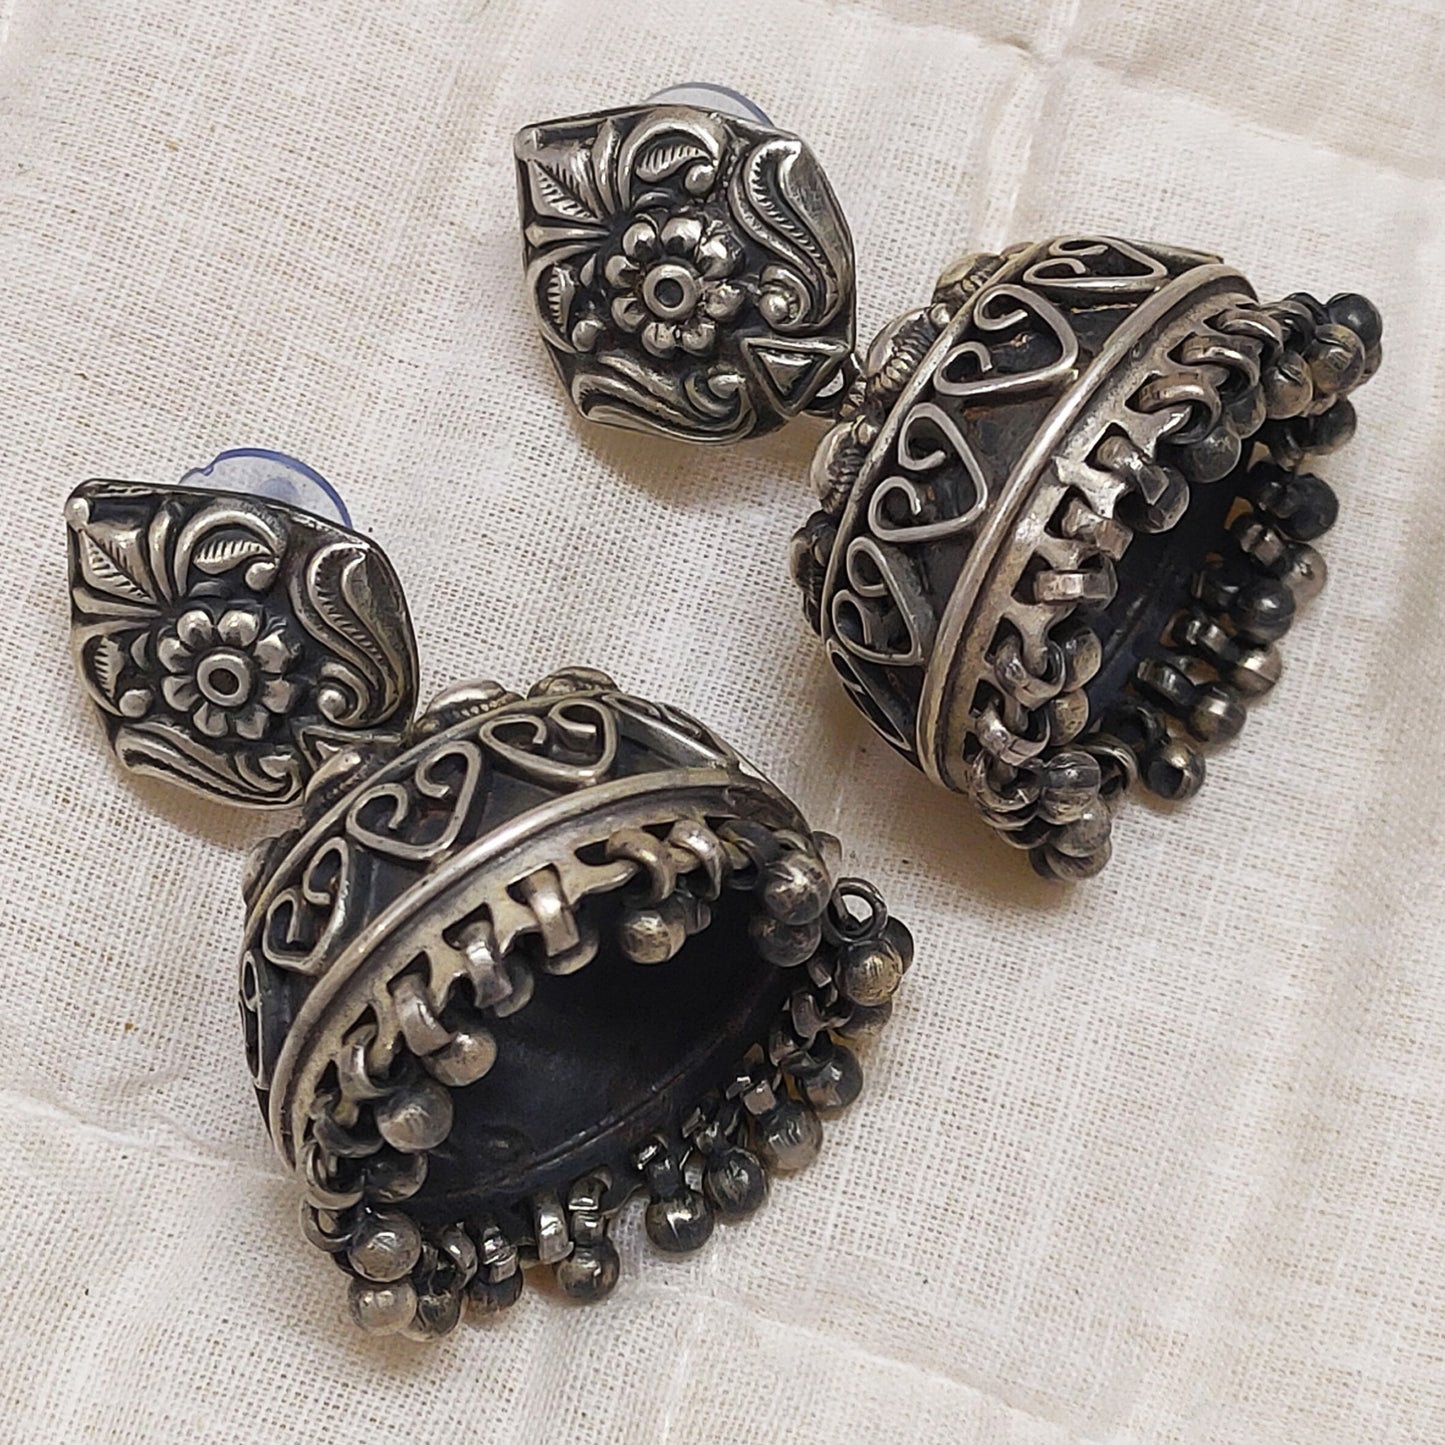 Rajasthan Tribal Jhumka Silver Earrings